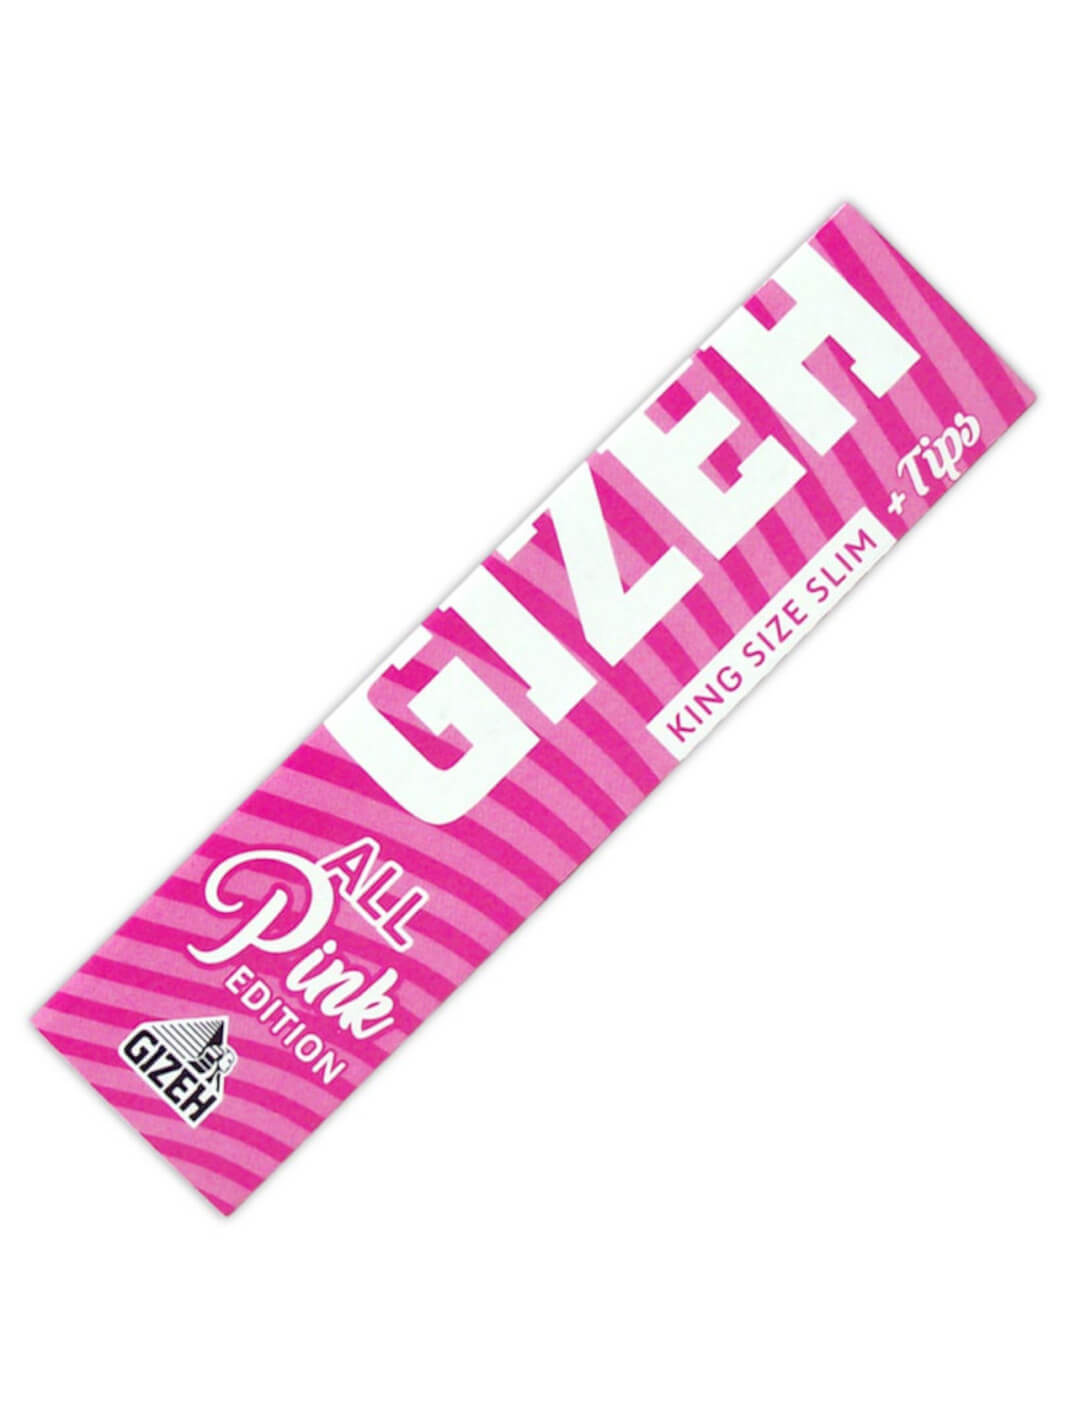 Gizeh pink paper ks slim tips